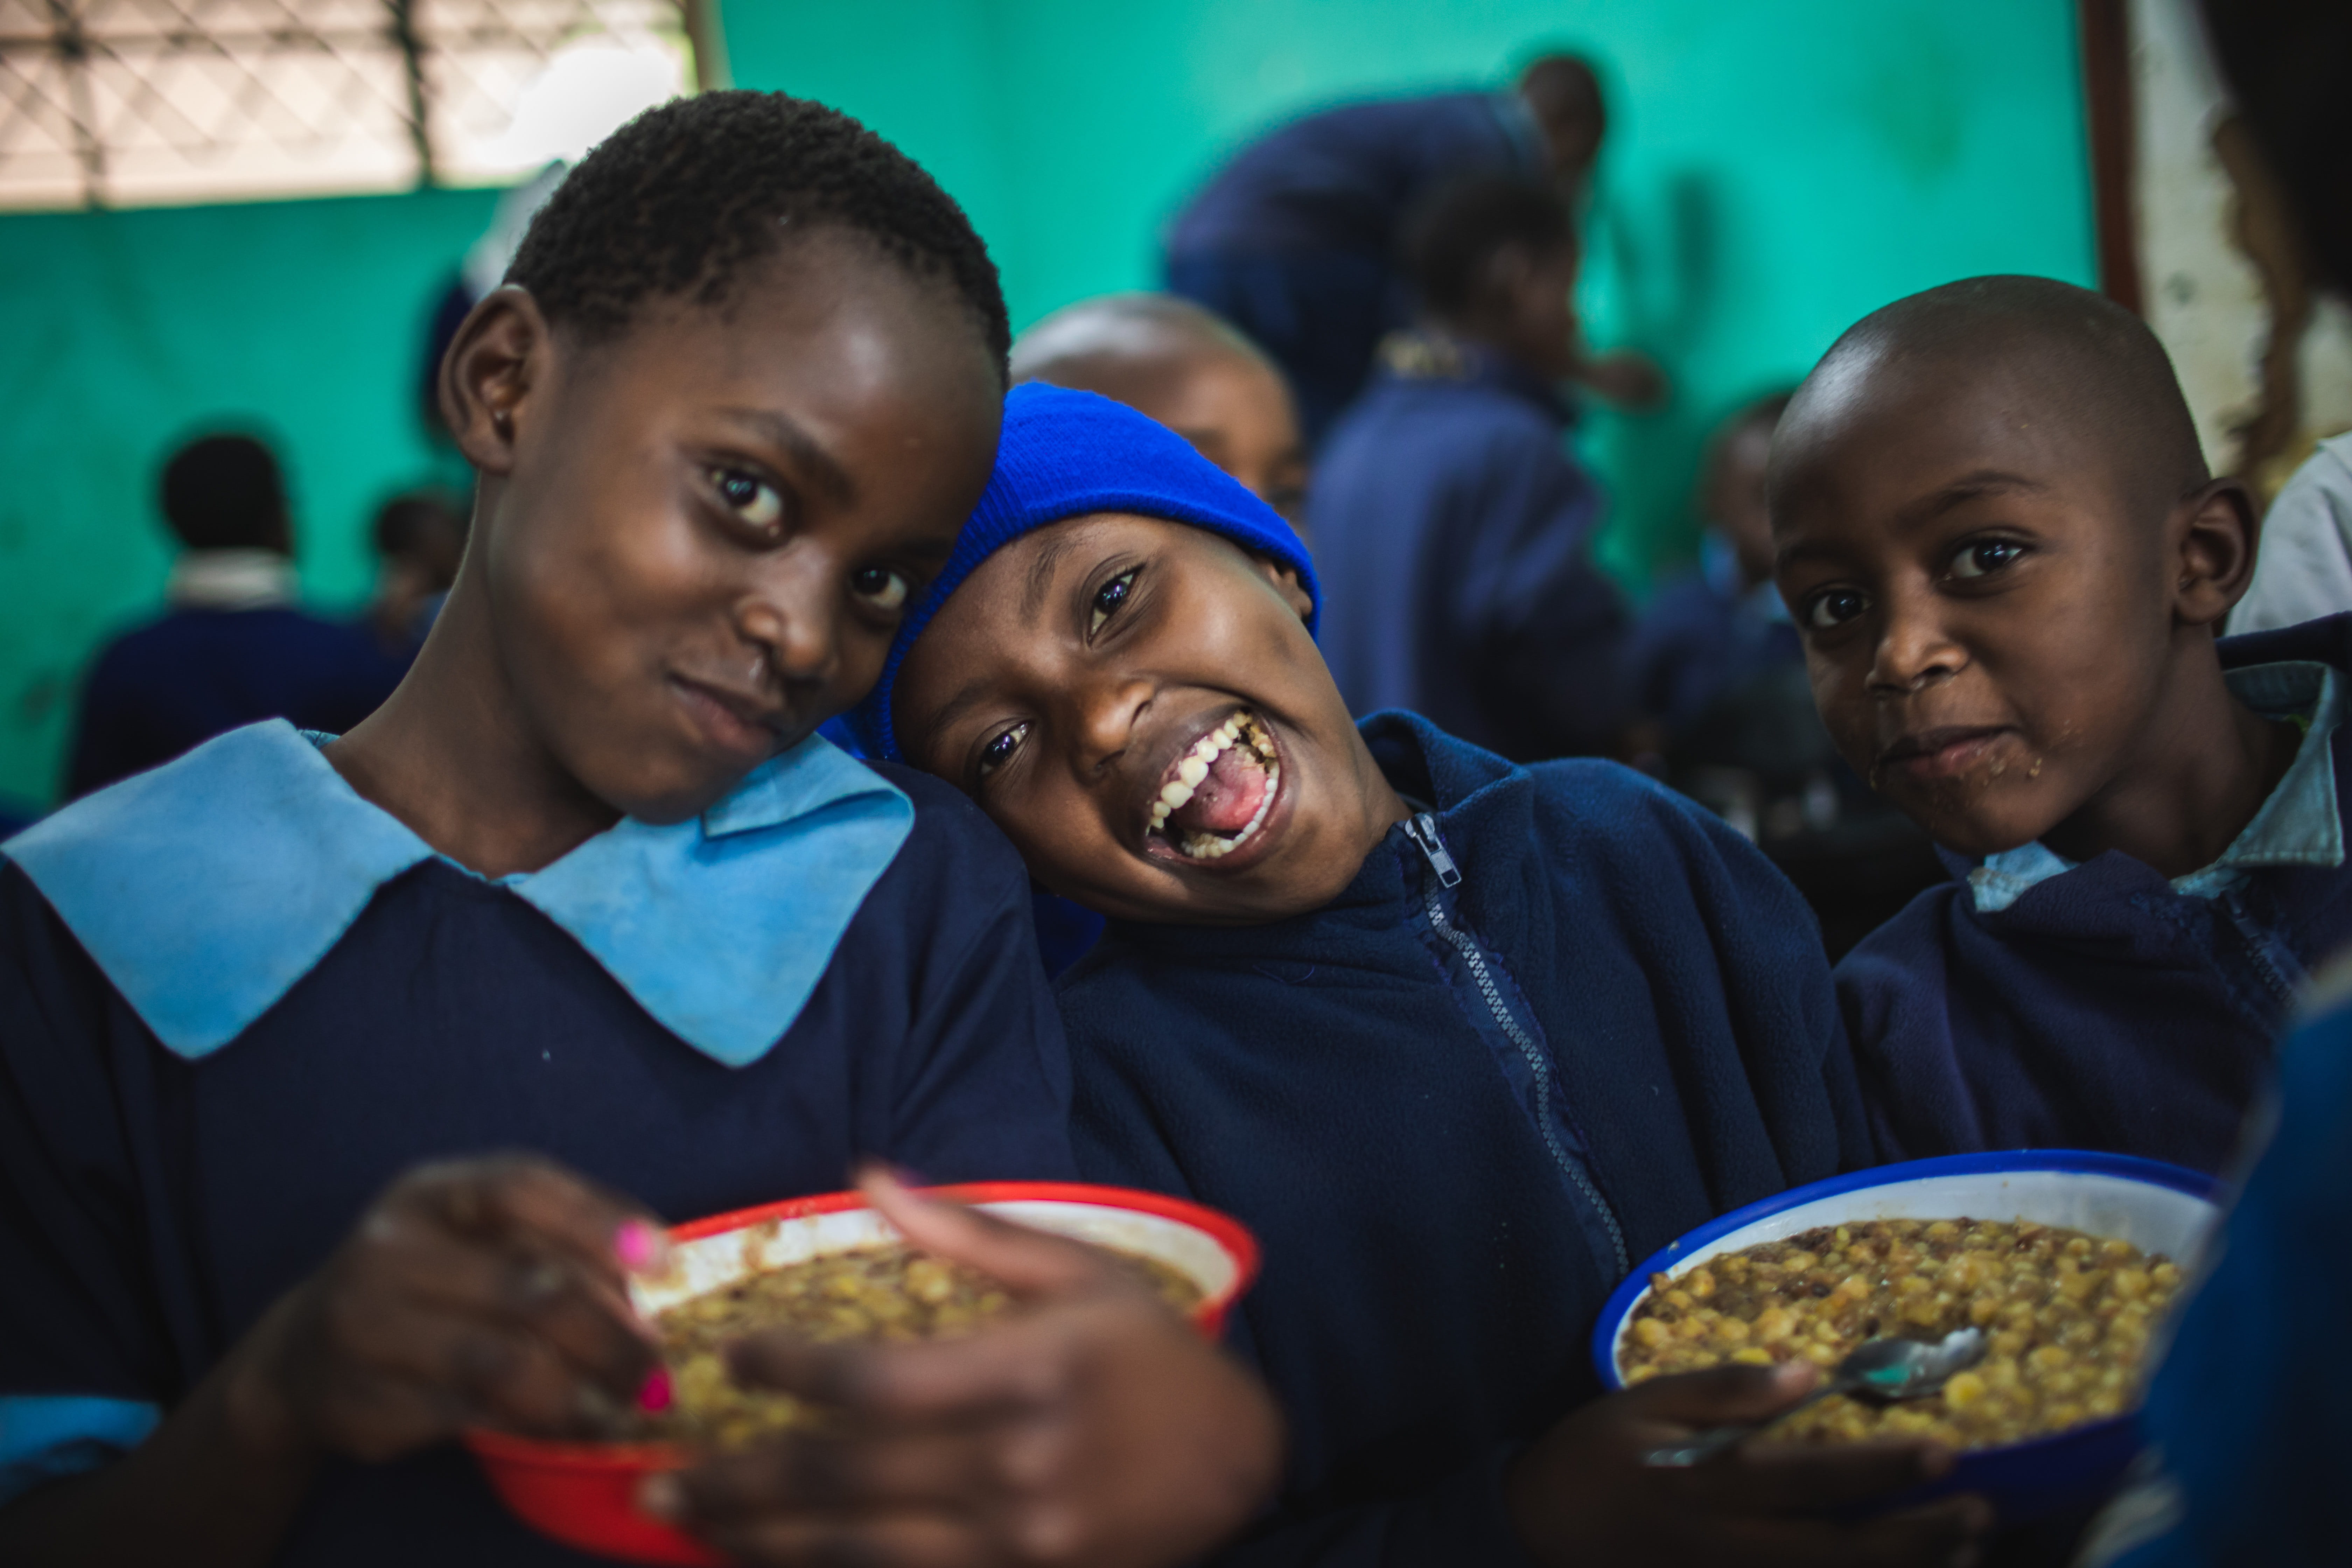 Kinder aus Kenia beim Essen. (Quelle: Lars Heidrich)